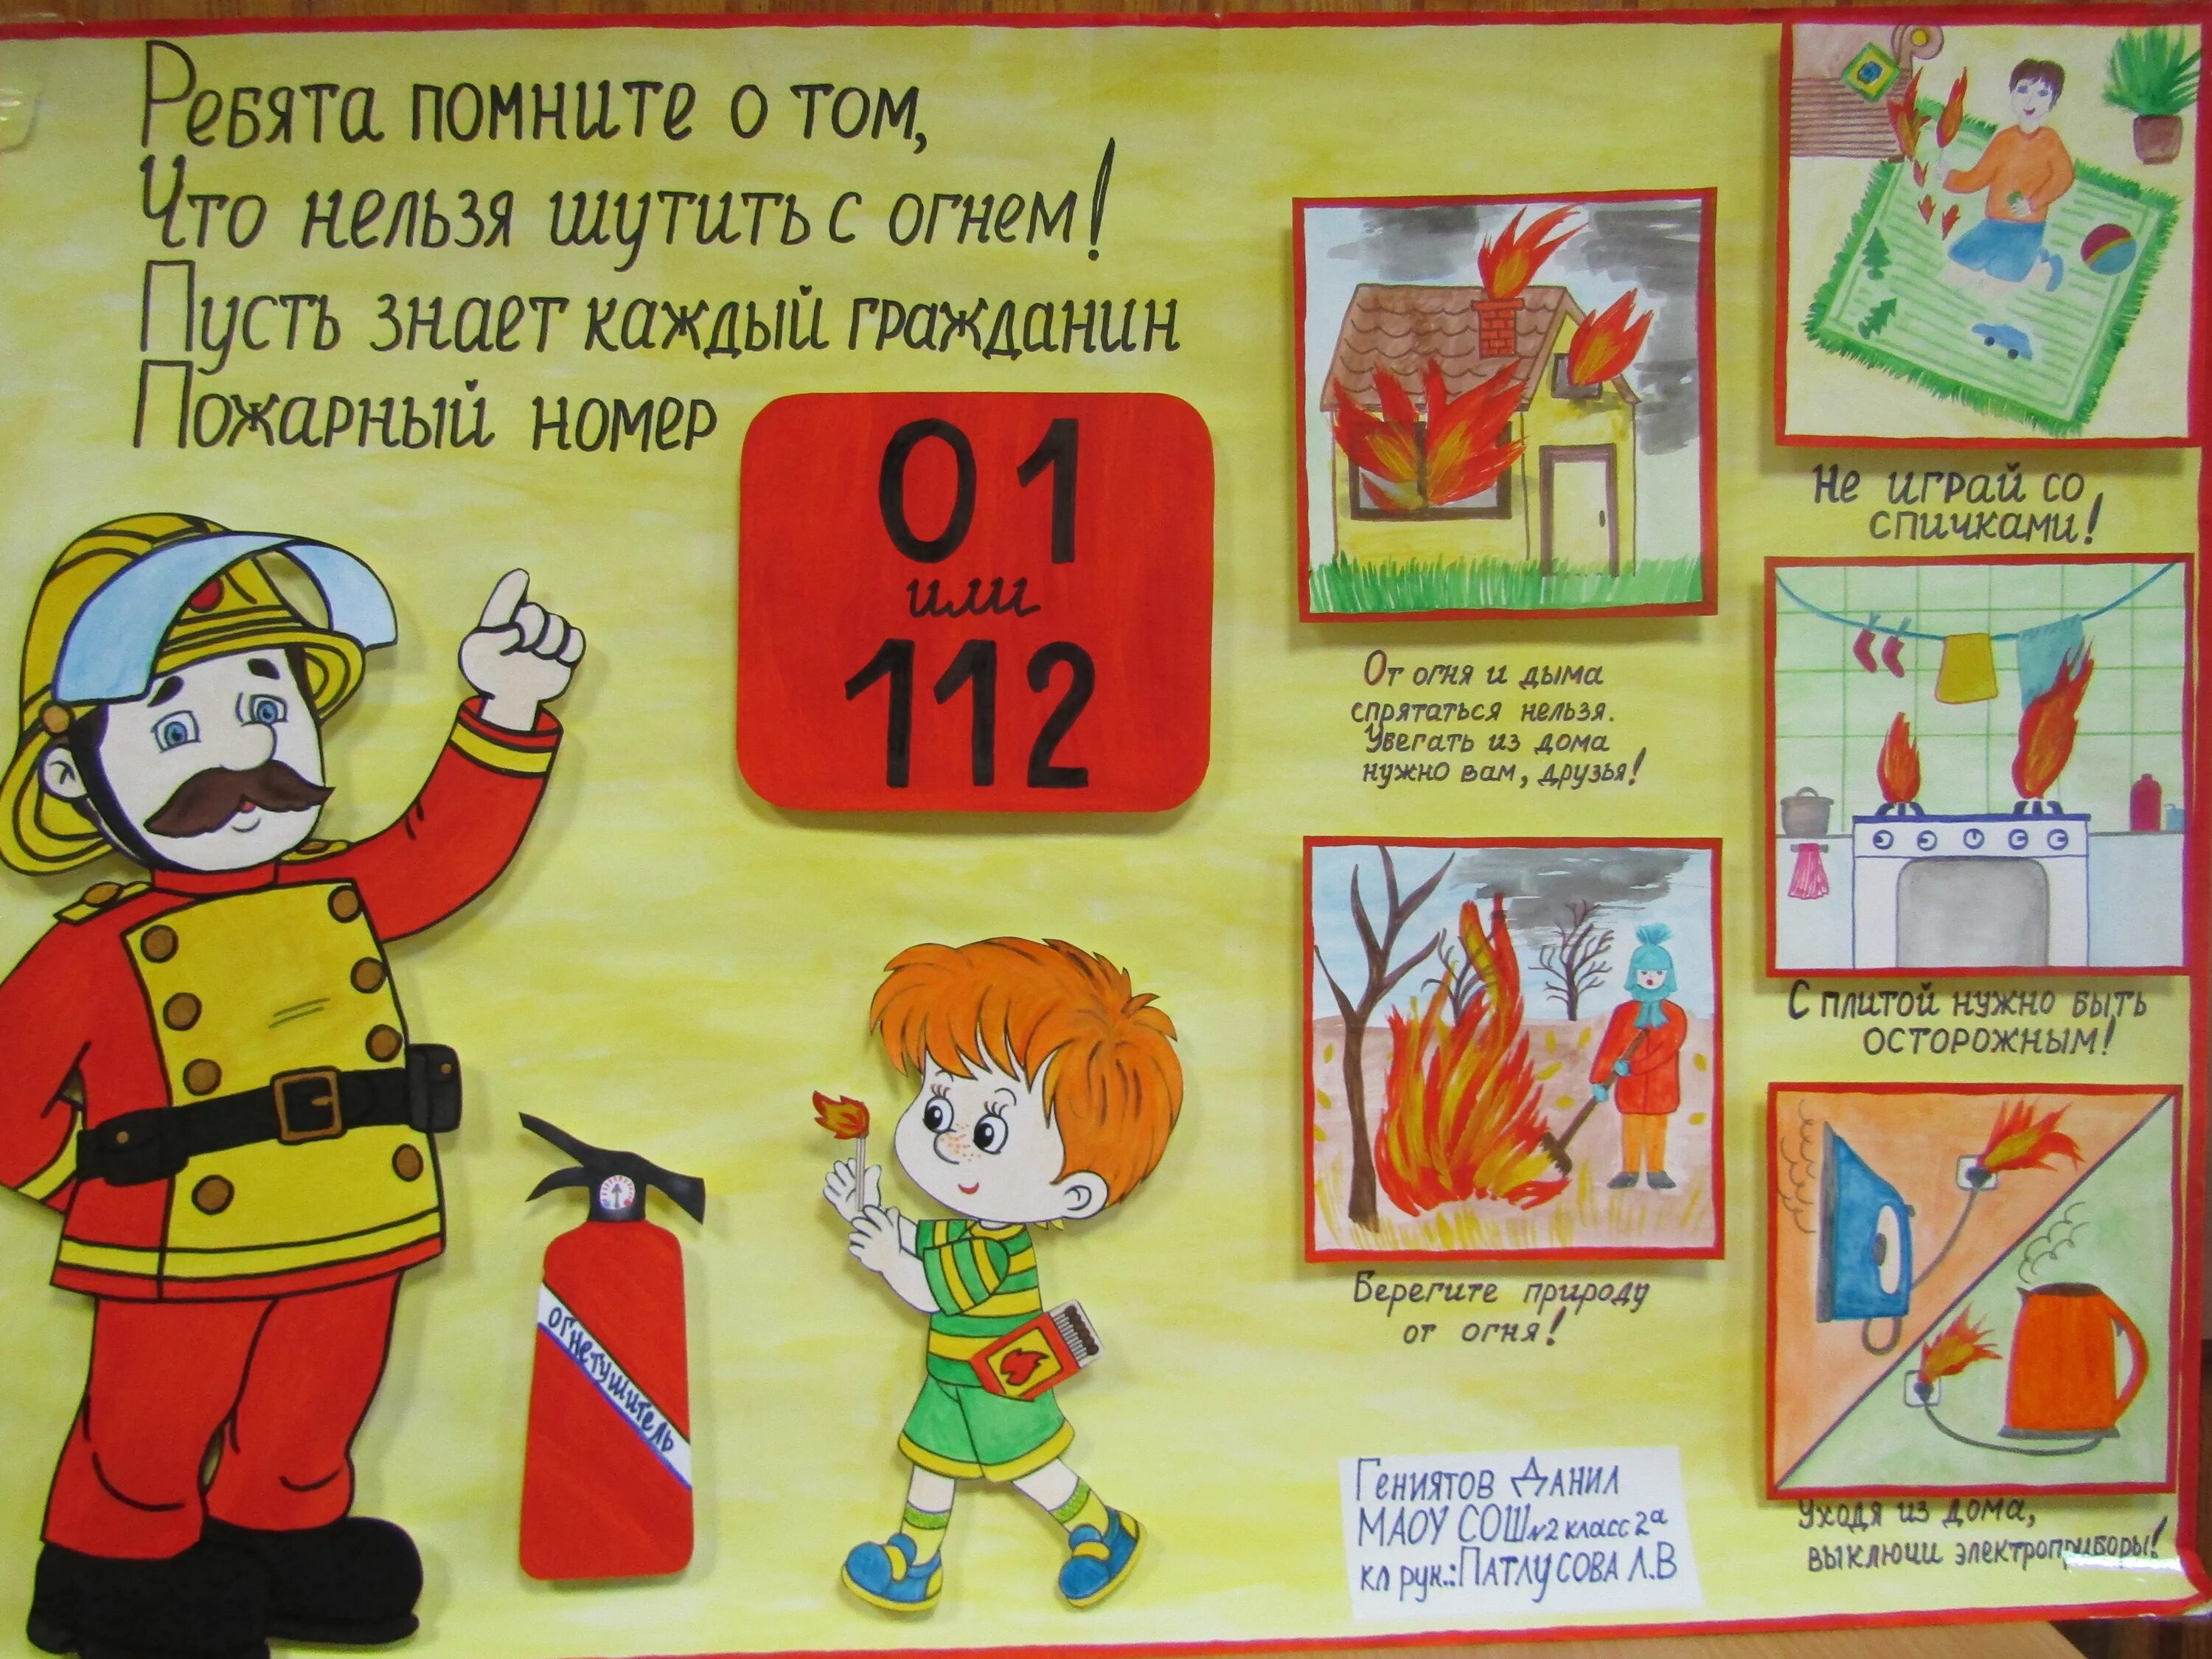 Плакат пожарного для детей. Рисунок пожарная безопасность. Плакат на тему противопожарная безопасность. Противопожарная безопасность рисунки. Плакат на тему плжарной безопасност.